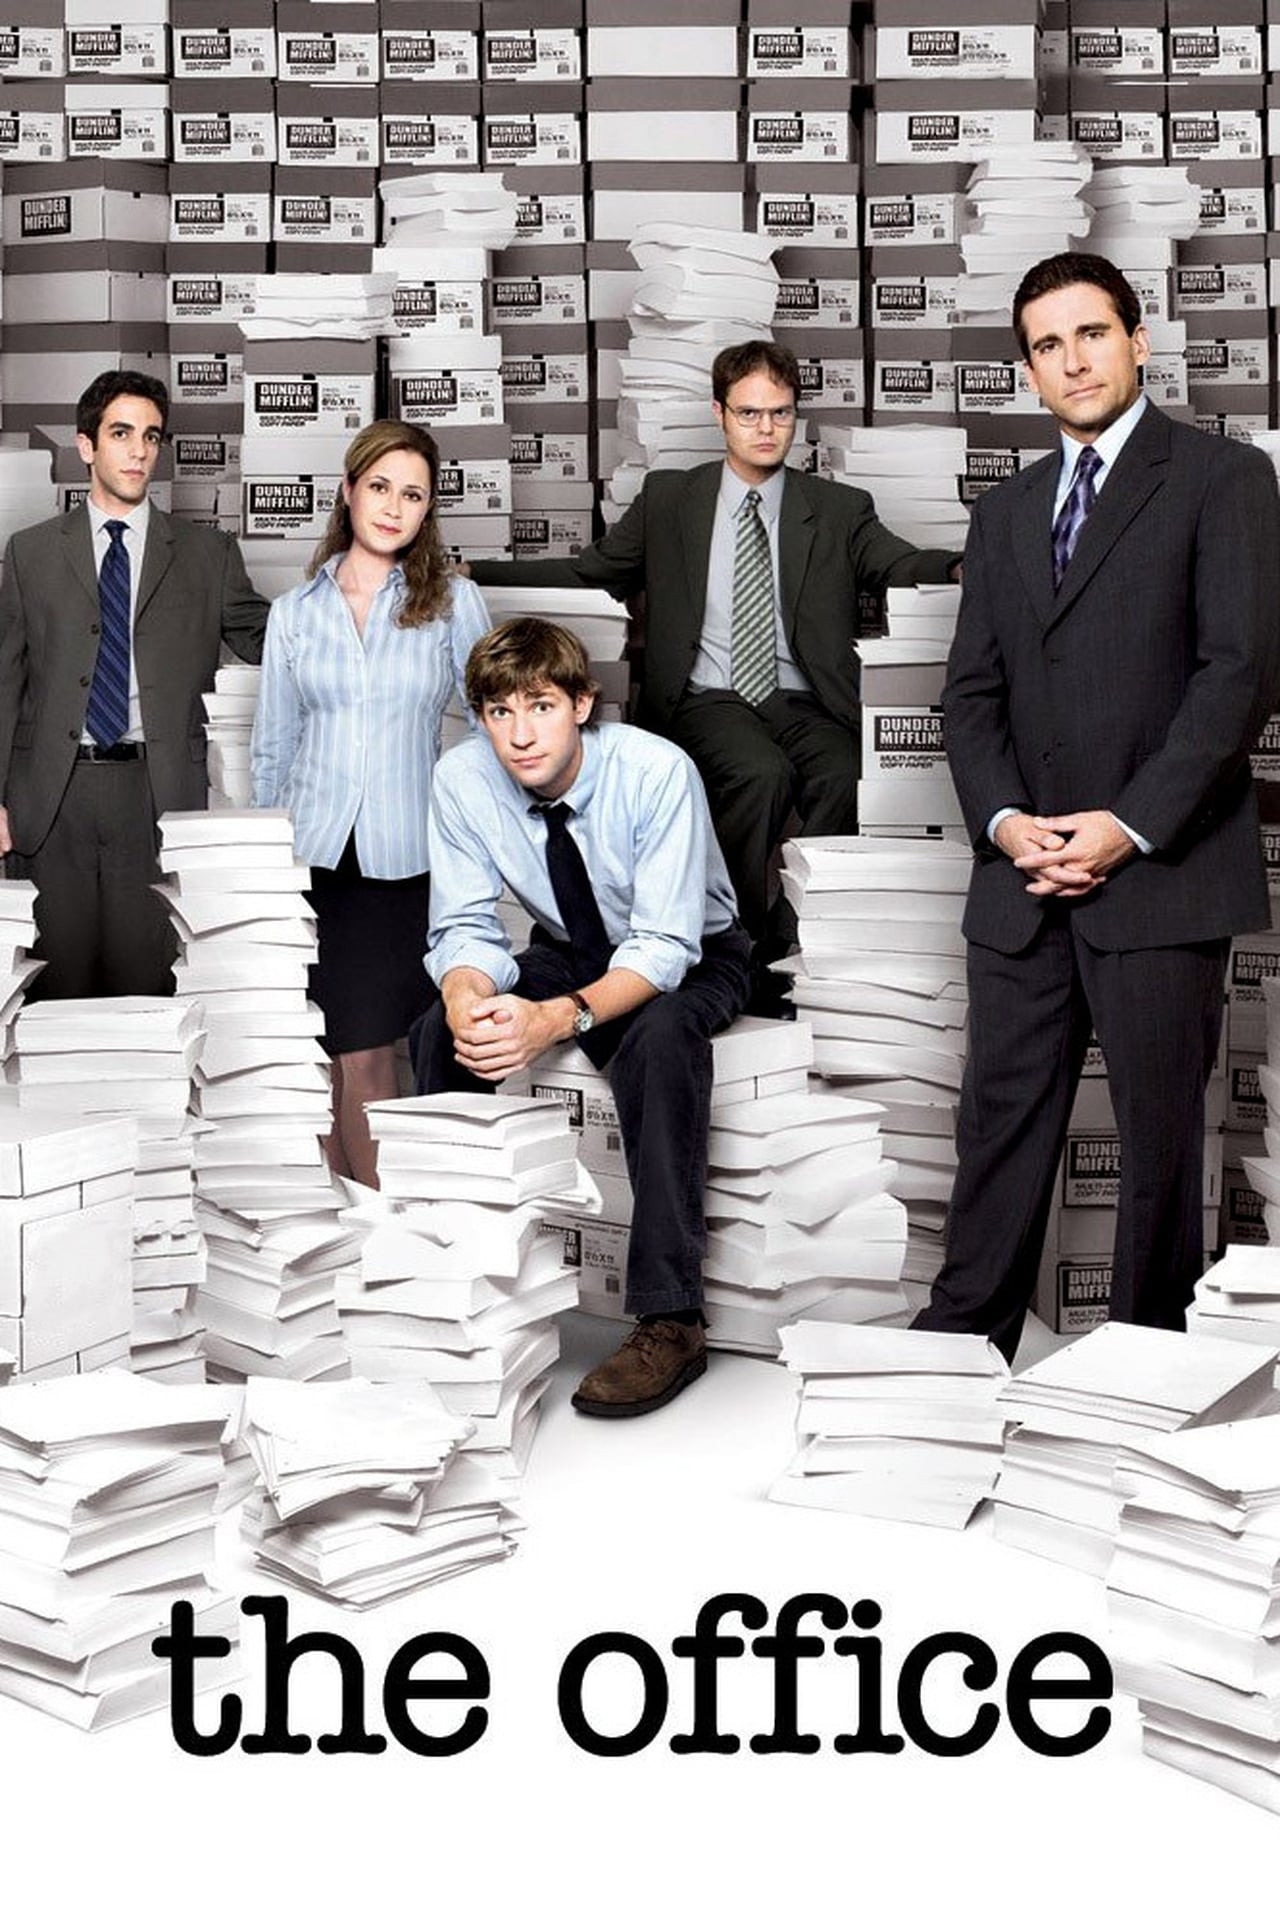 The Office (US) Season 9